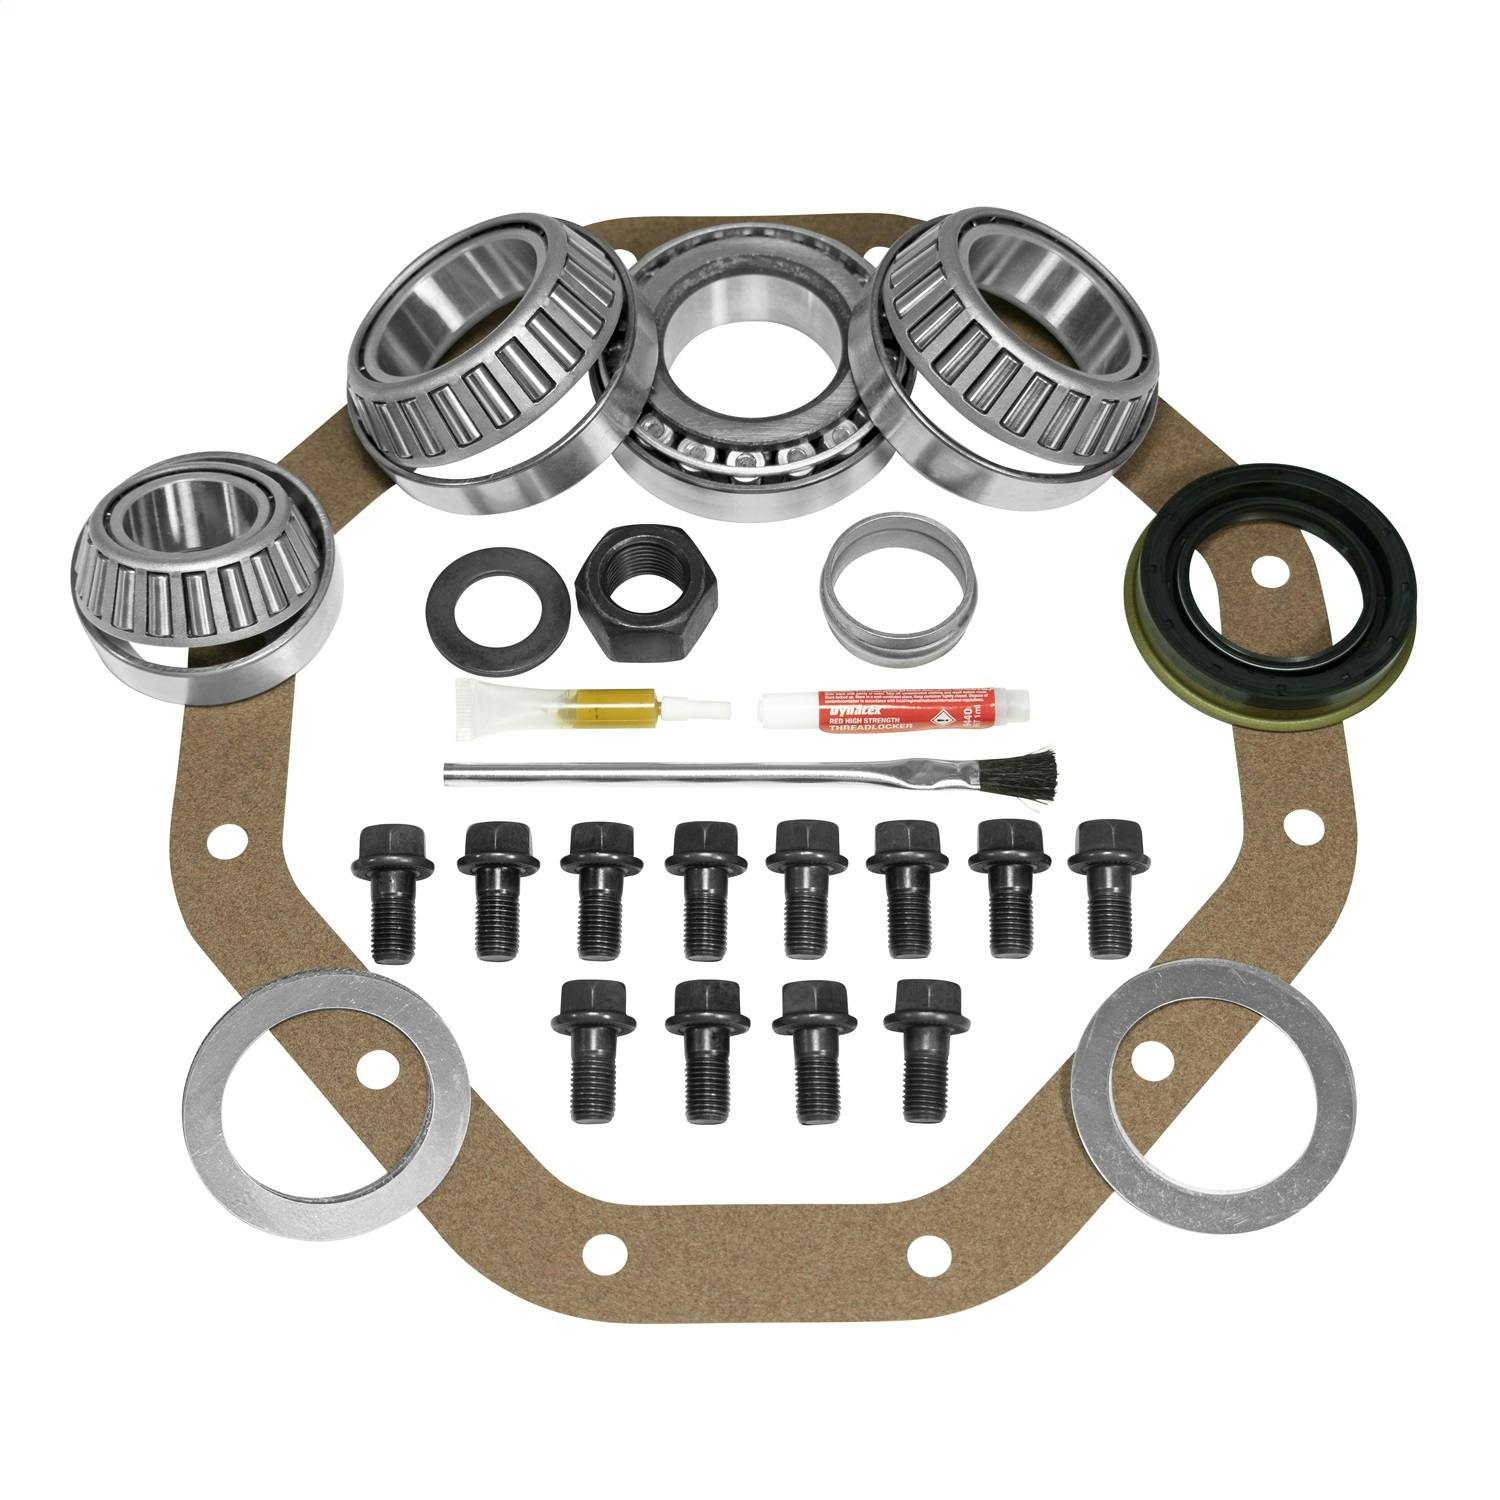 USA Standard Gear ZK CSPRINTER Differential Rebuild Kit